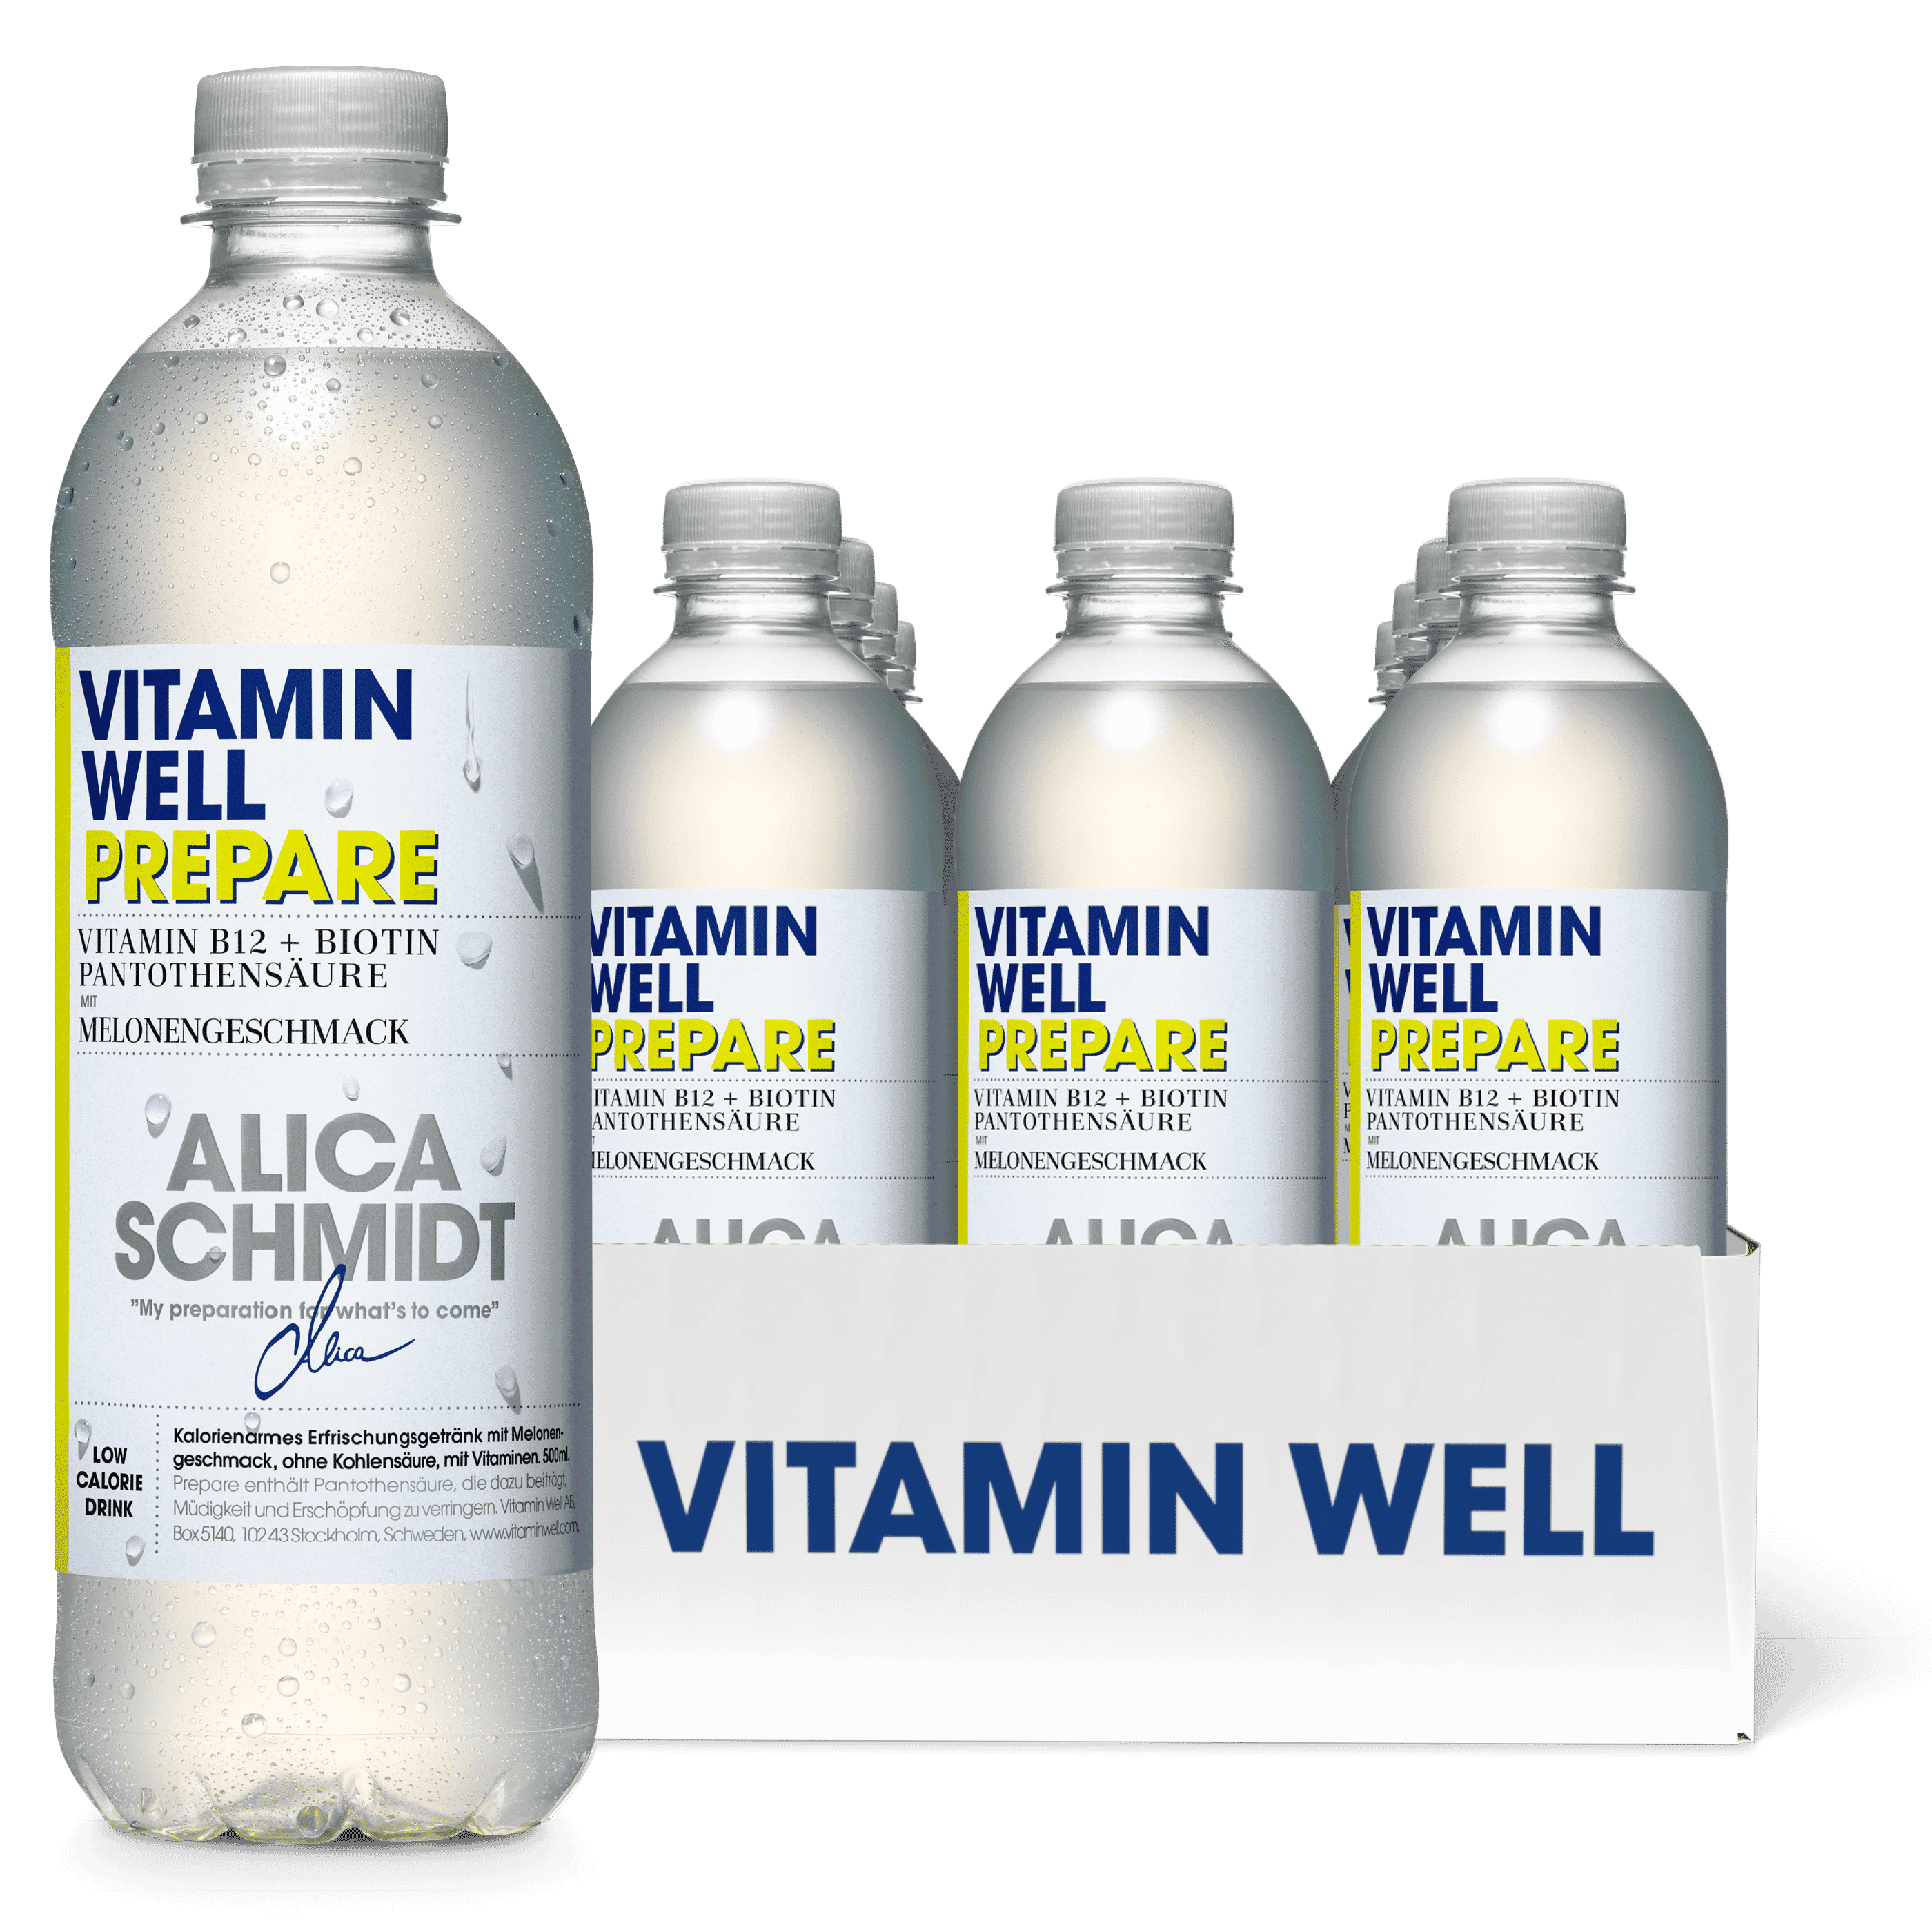 Vitamin Well Prepare